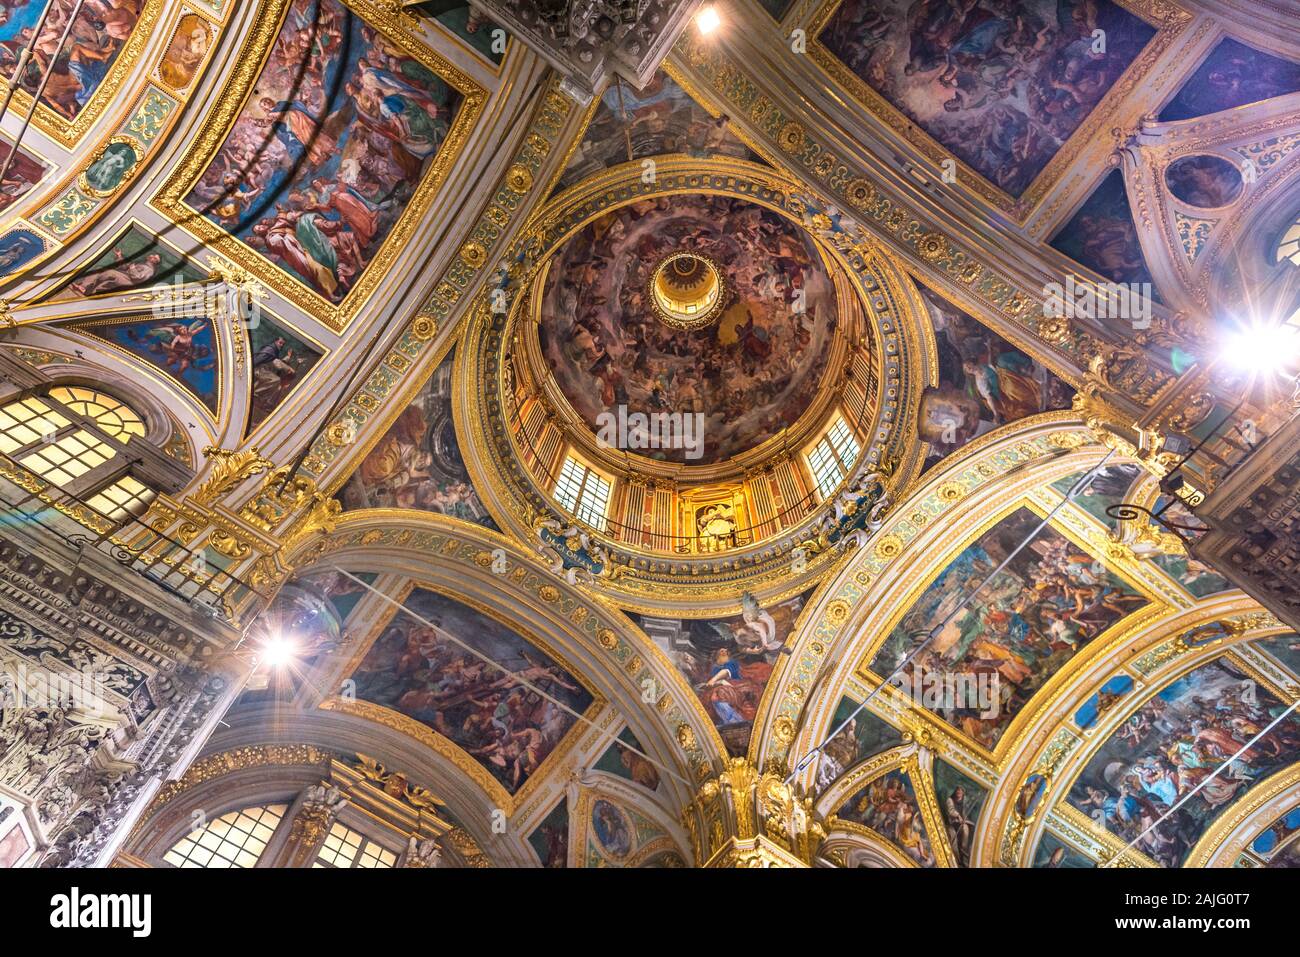 Genova, Genova, Italy: frescoed ceilings, dome of baroque church Chiesa dei Santi Ambrogio e Andrea, Chiesa del Gesù, Piazza Matteotti Palazzo Ducale Stock Photo